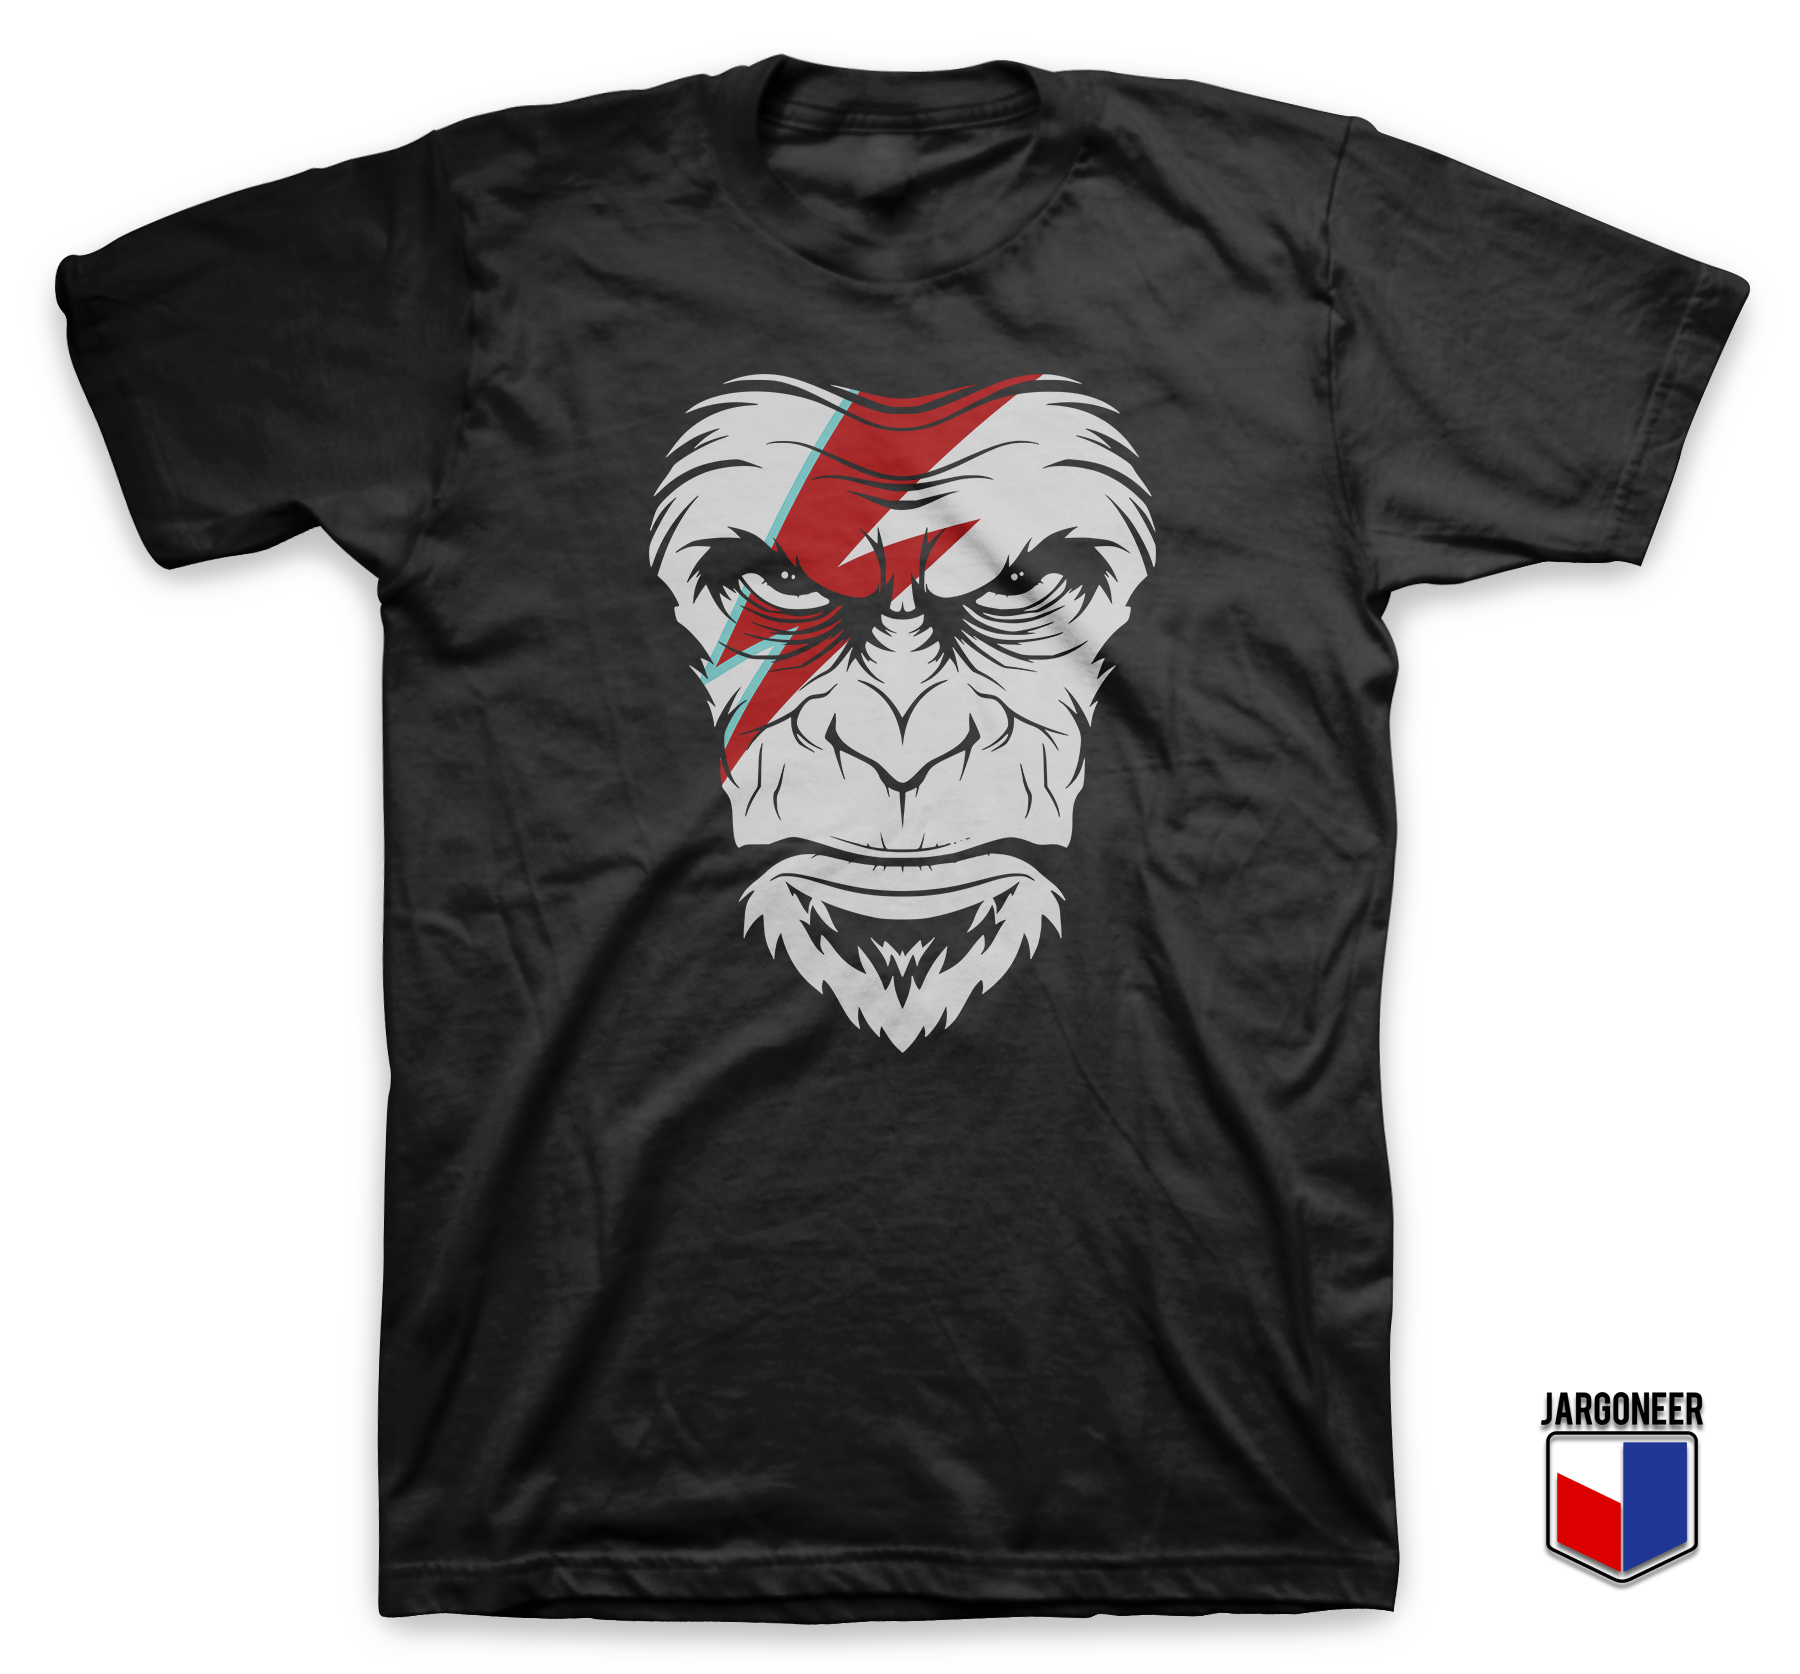 Face Of The New Wave Ape Black T Shirt - Shop Unique Graphic Cool Shirt Designs